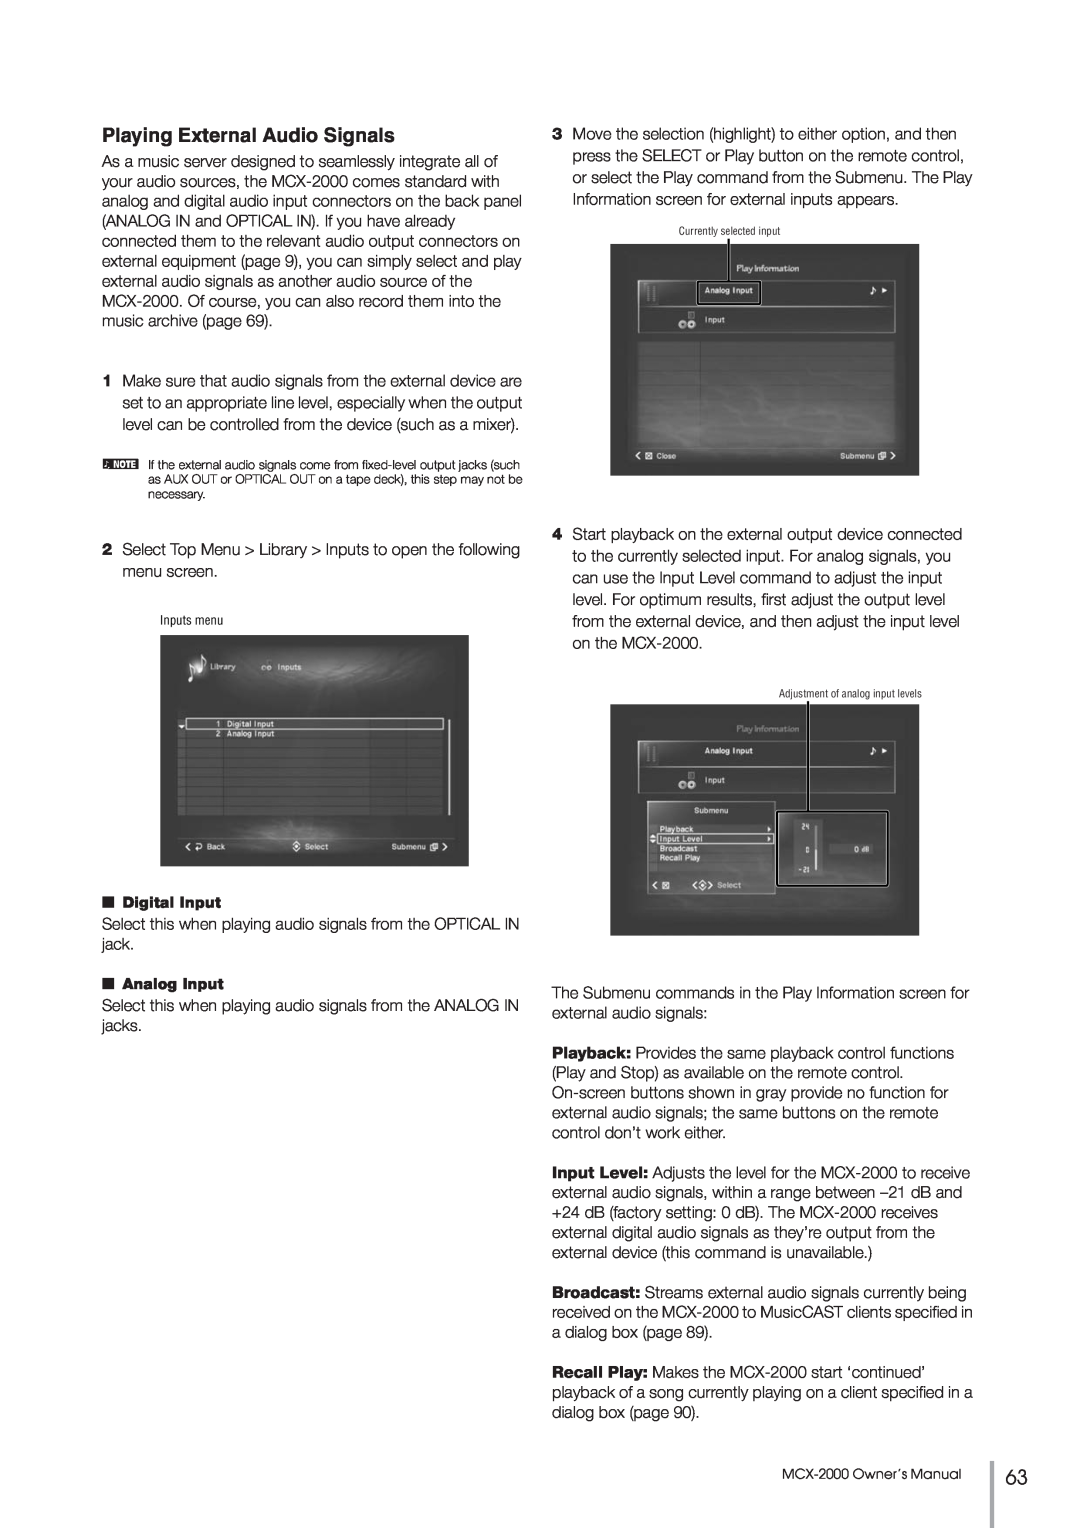 Yamaha MCX-2000 setup guide Playing External Audio Signals, Digital Input, Analog Input 